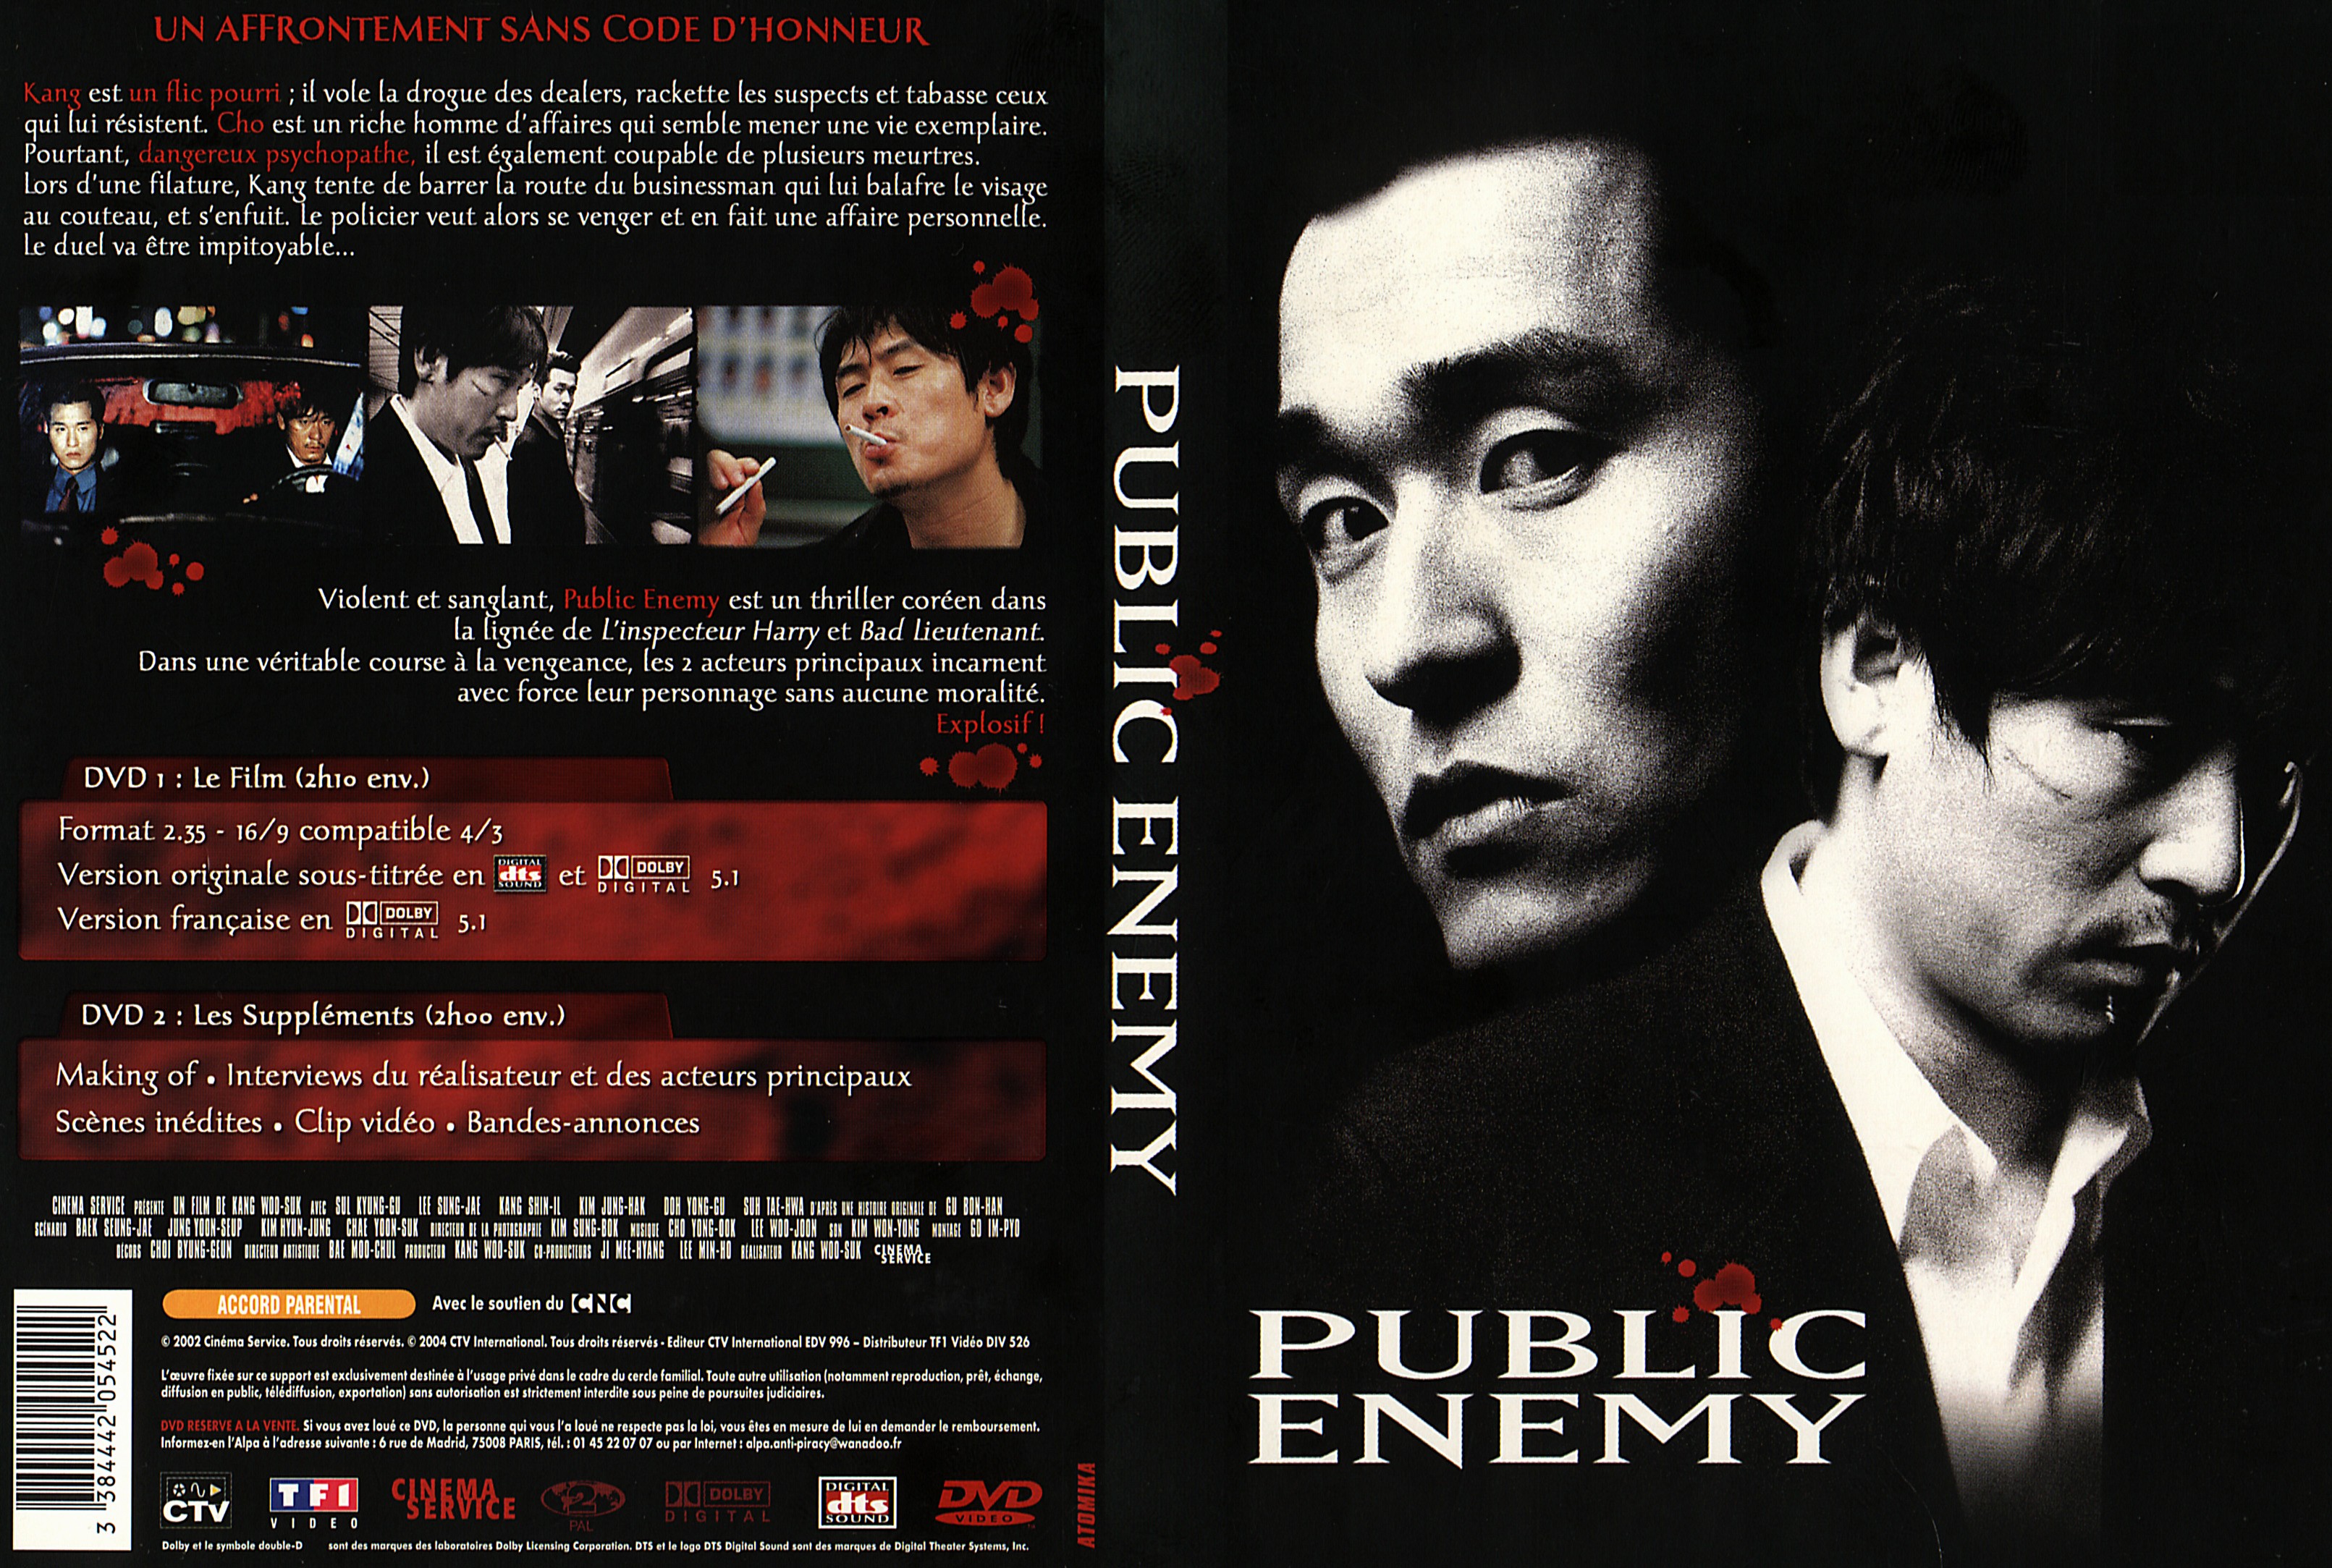 Jaquette DVD Public enemy v2